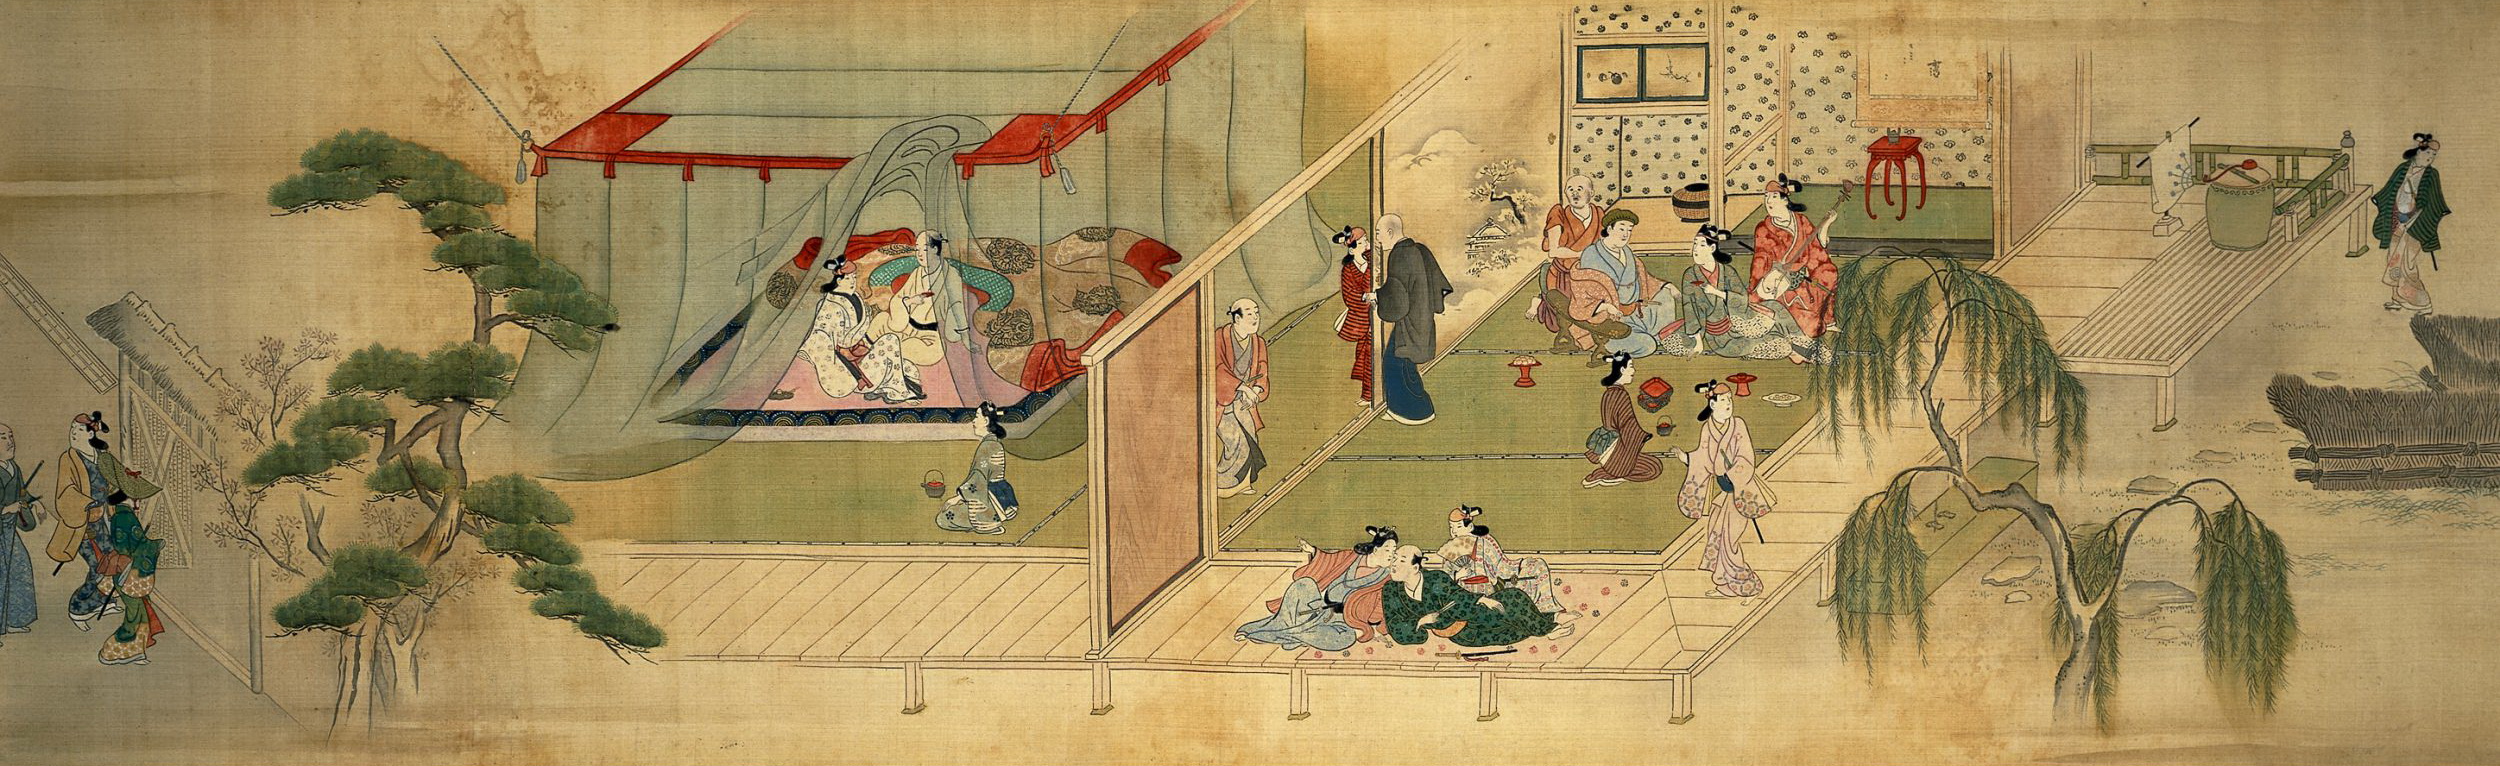 Моронобу Хисикава. Театр. Чайхана, слева два самурая, входящие в ворота, куртизанка с клиентом под москитной сеткой, справа гостиный зал. 1685.